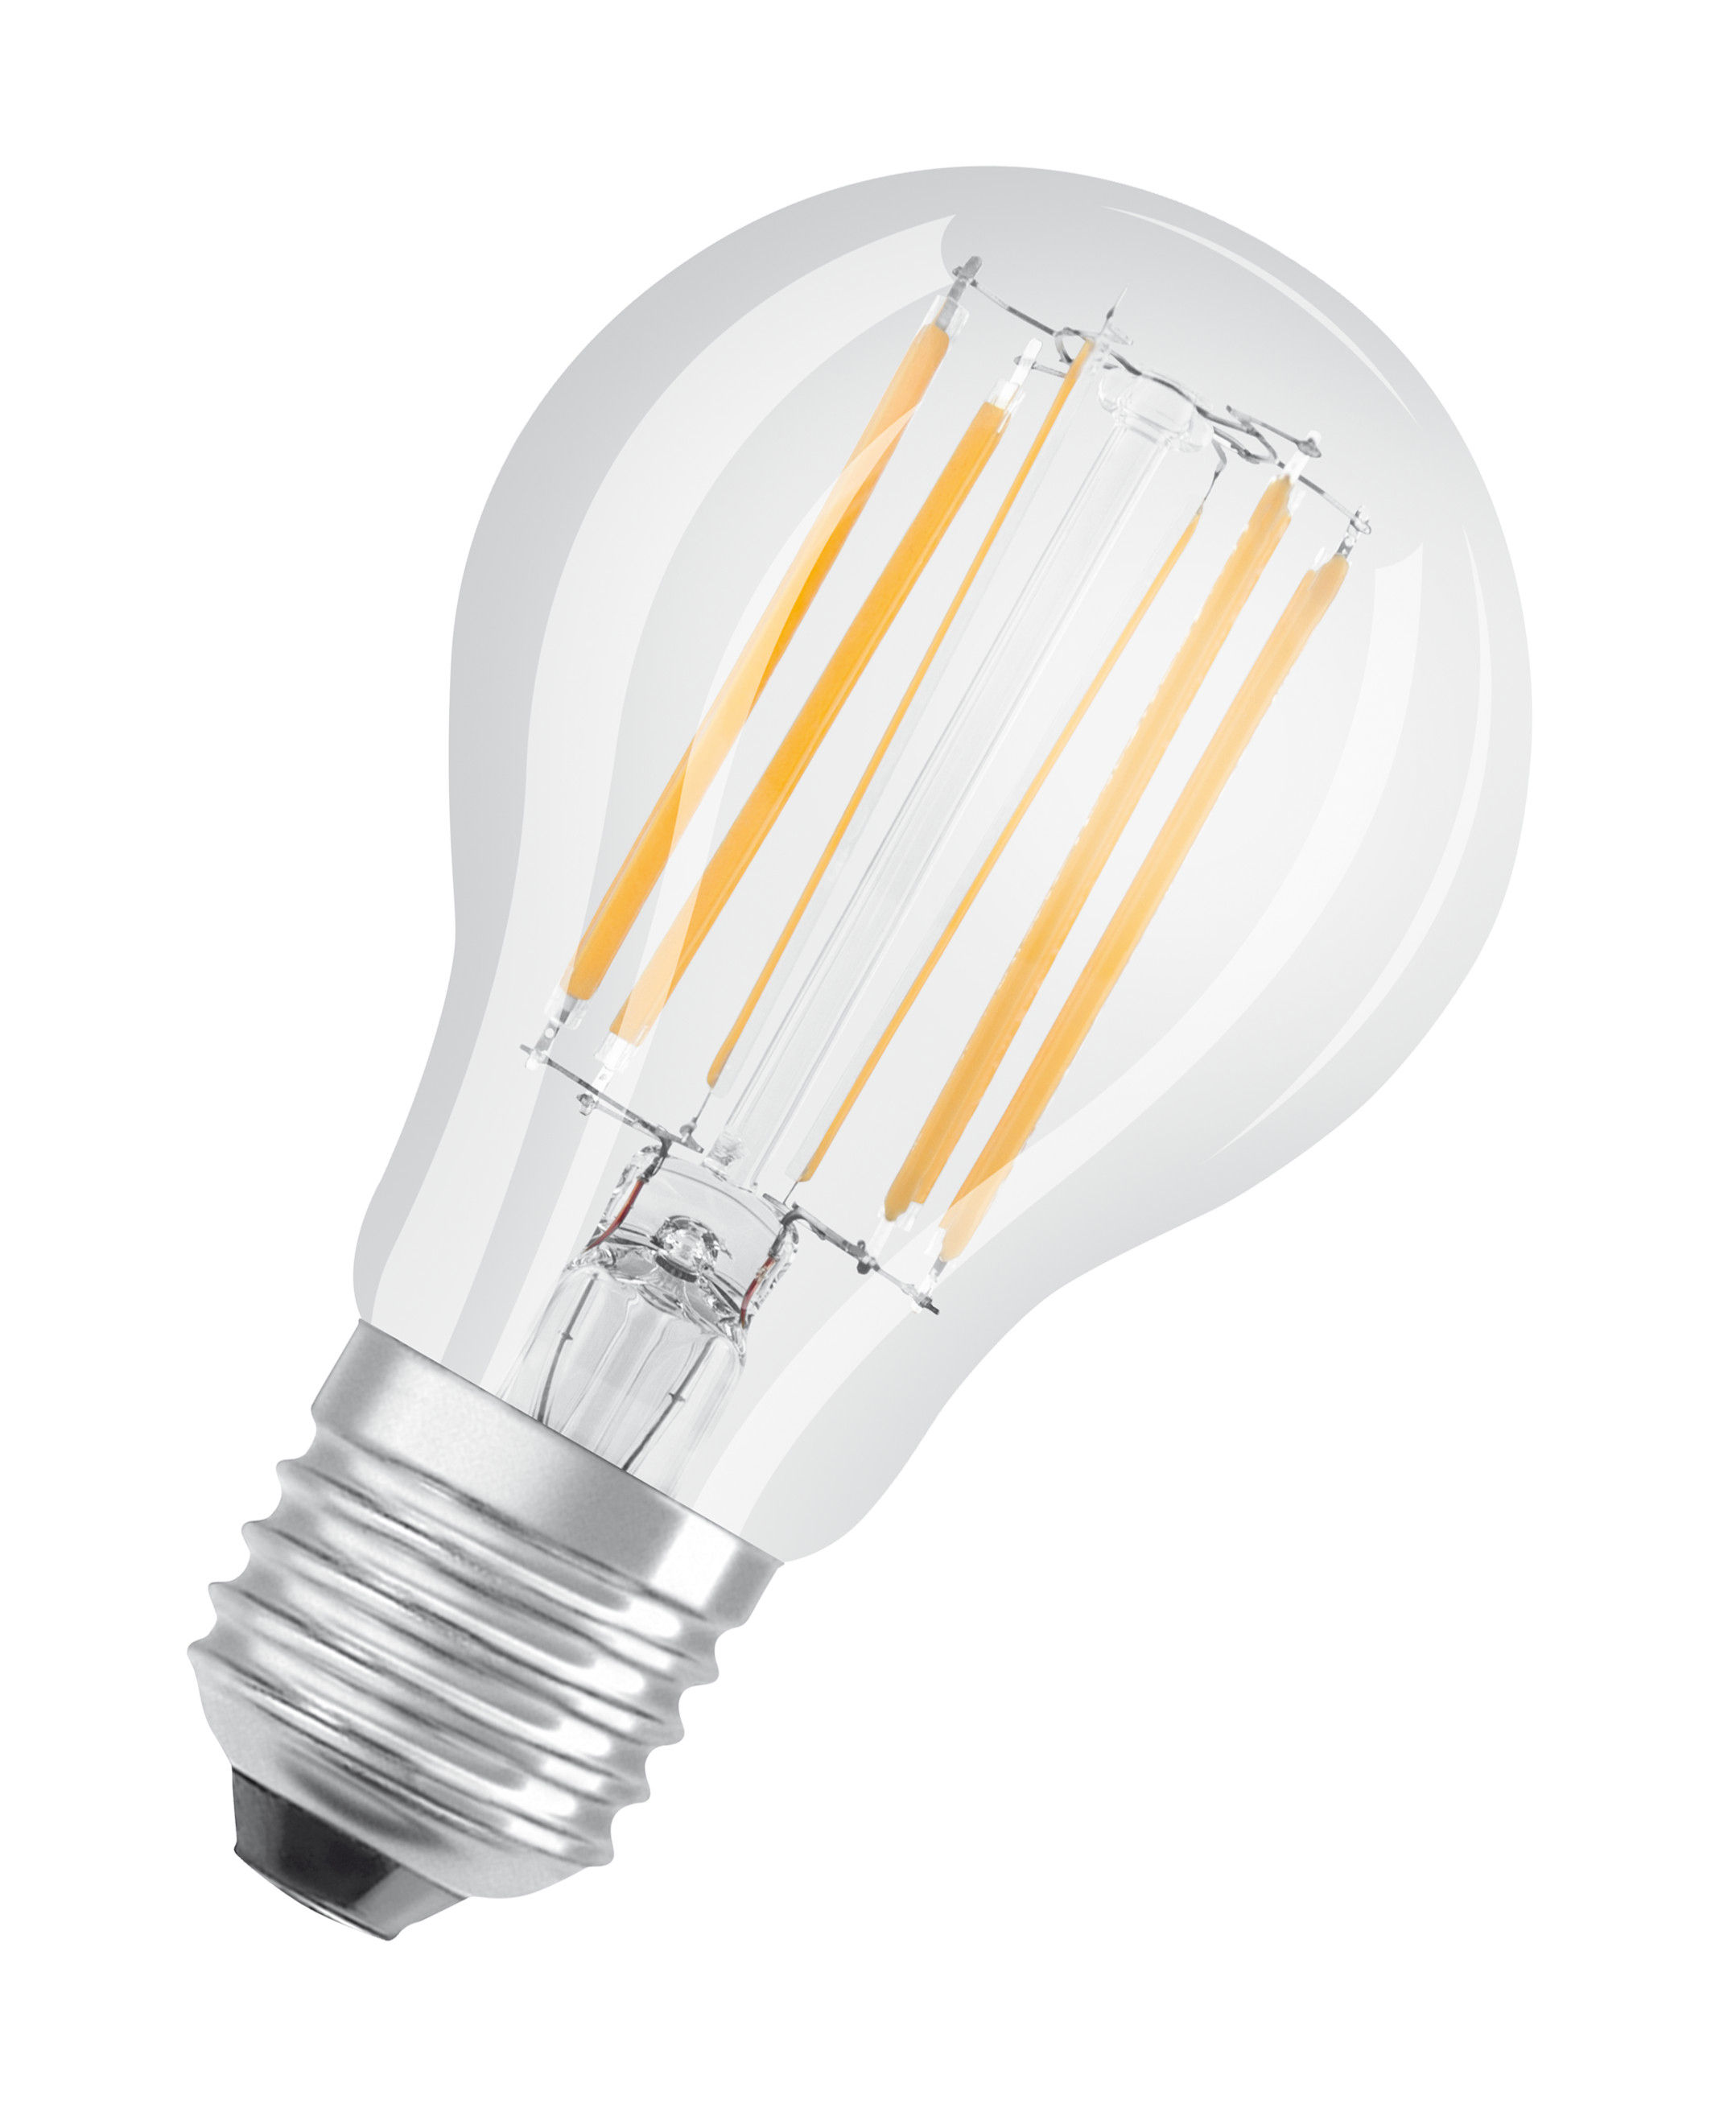 Ampoule Connectée E27 à Graduation avec LED RGB - Ampoule Poire Connectée à  LED A19 - 850 Lumen - 8 Watts - Application Pratique (HBT-E27) | Caliber